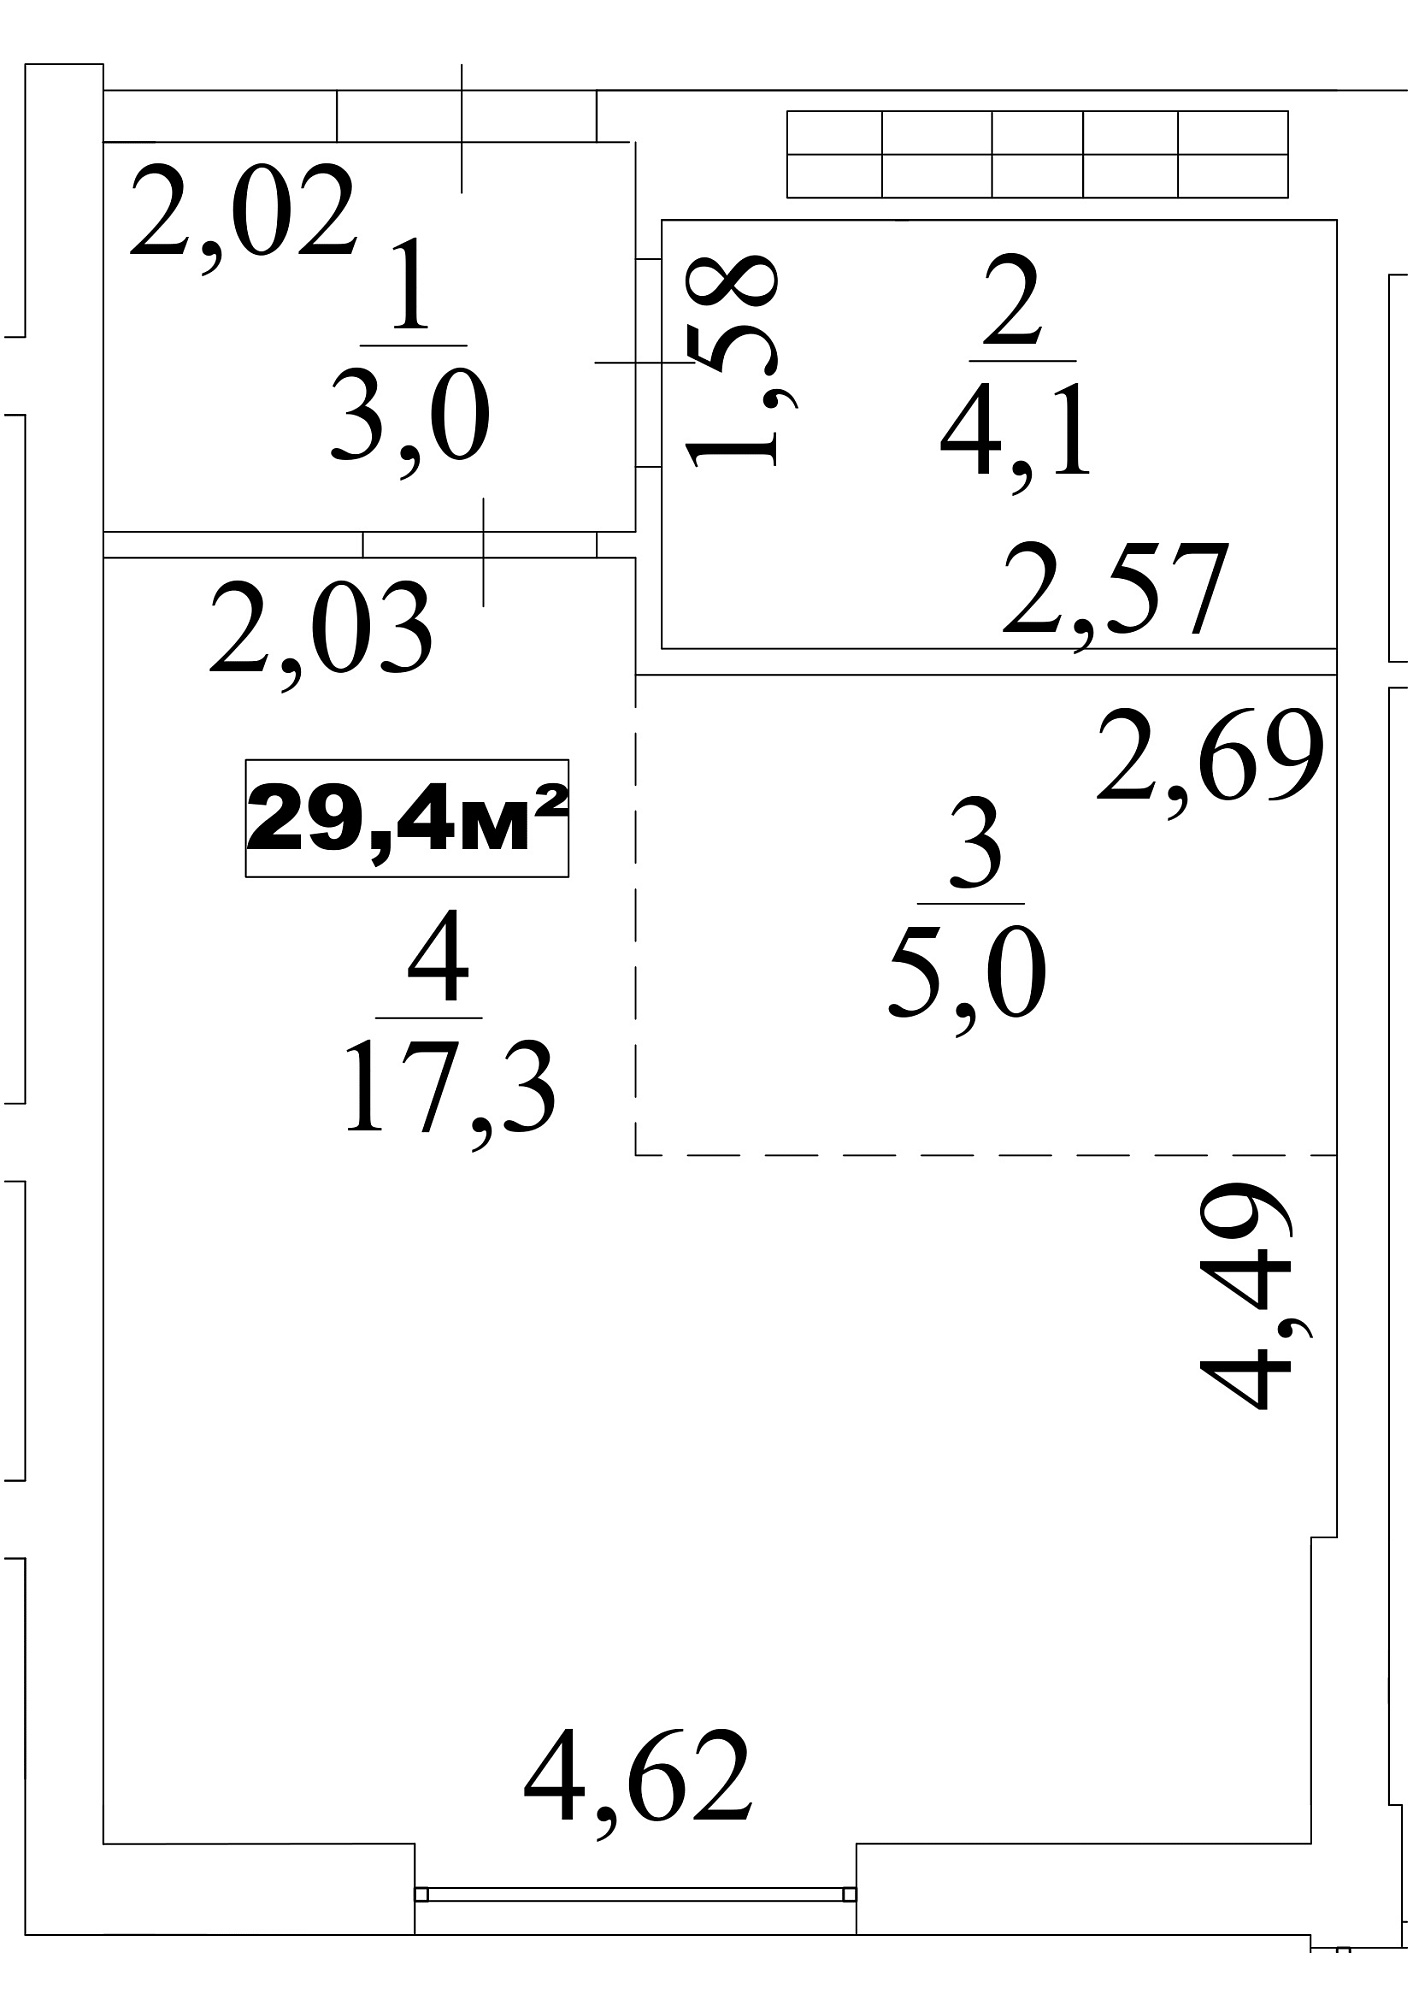 Планування Smart-квартира площею 29.4м2, AB-10-03/00027.